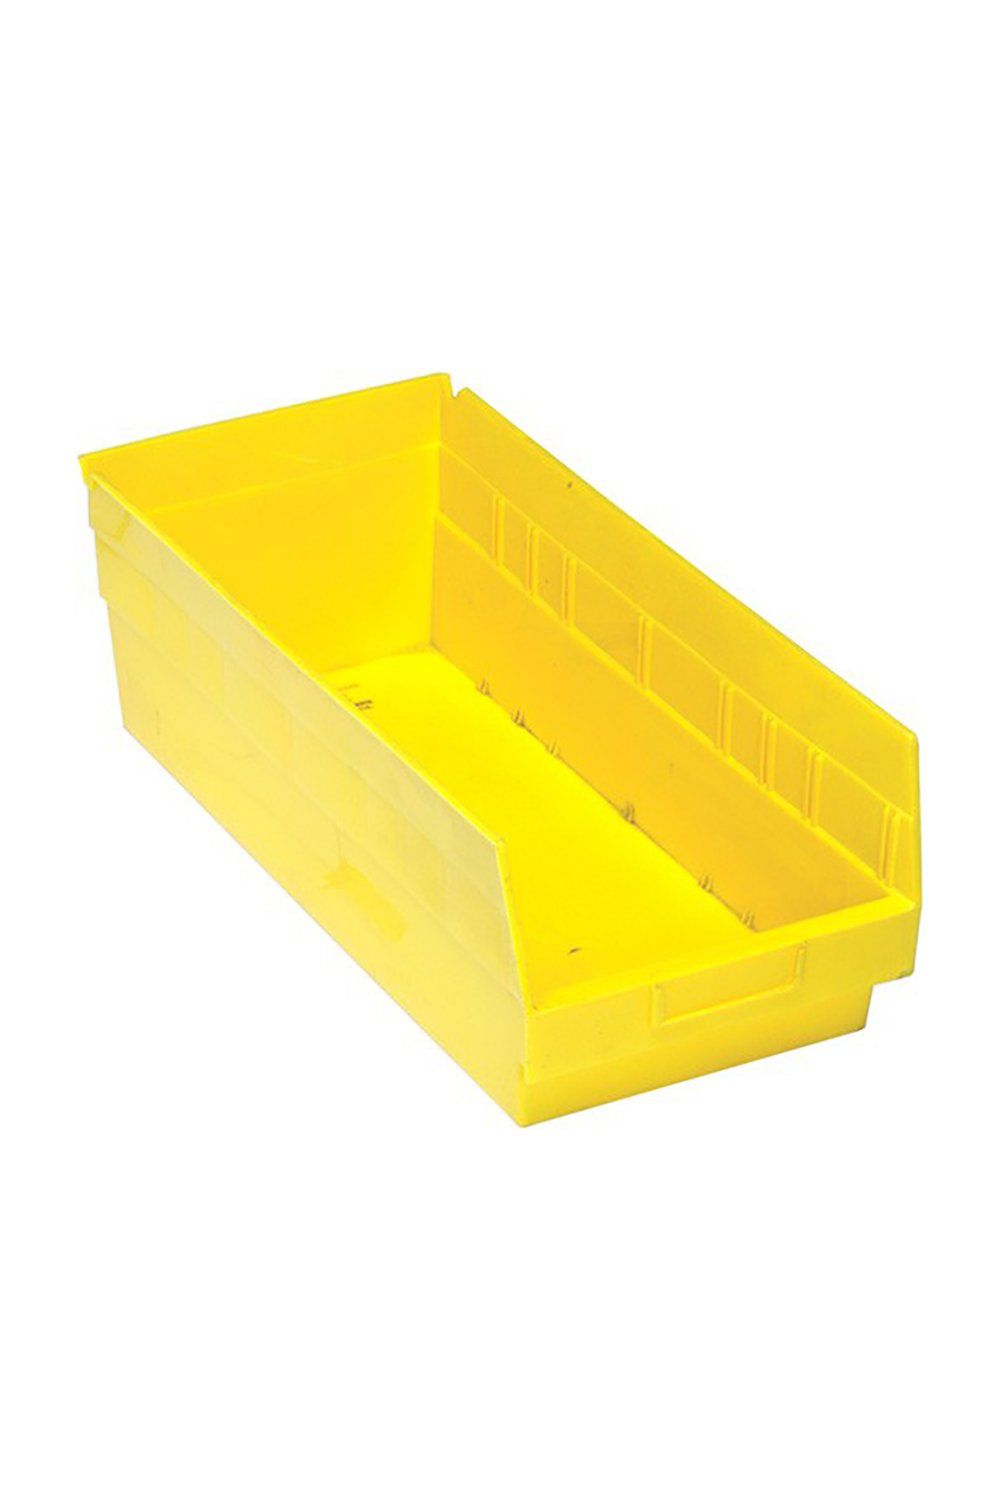 Shelf Bin for 24"D Shelves Bins & Containers Acart 17-7/8'' x 8-3/8'' x 6'' Yellow 